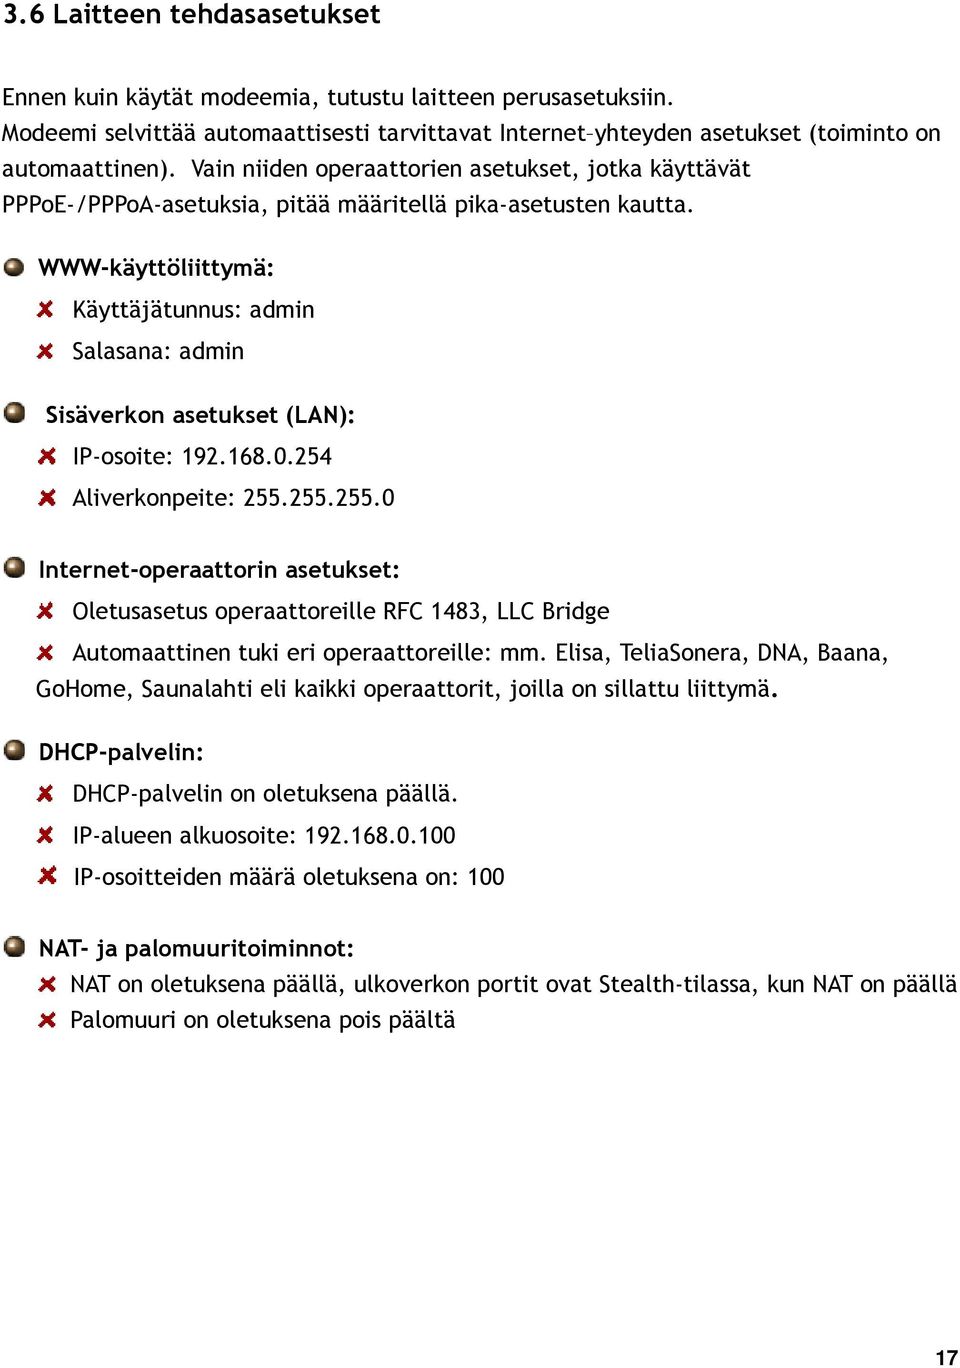 WWW-käyttöliittymä: Käyttäjätunnus: admin Salasana: admin Sisäverkon asetukset (LAN): IP-osoite: 192.168.0.254 Aliverkonpeite: 255.